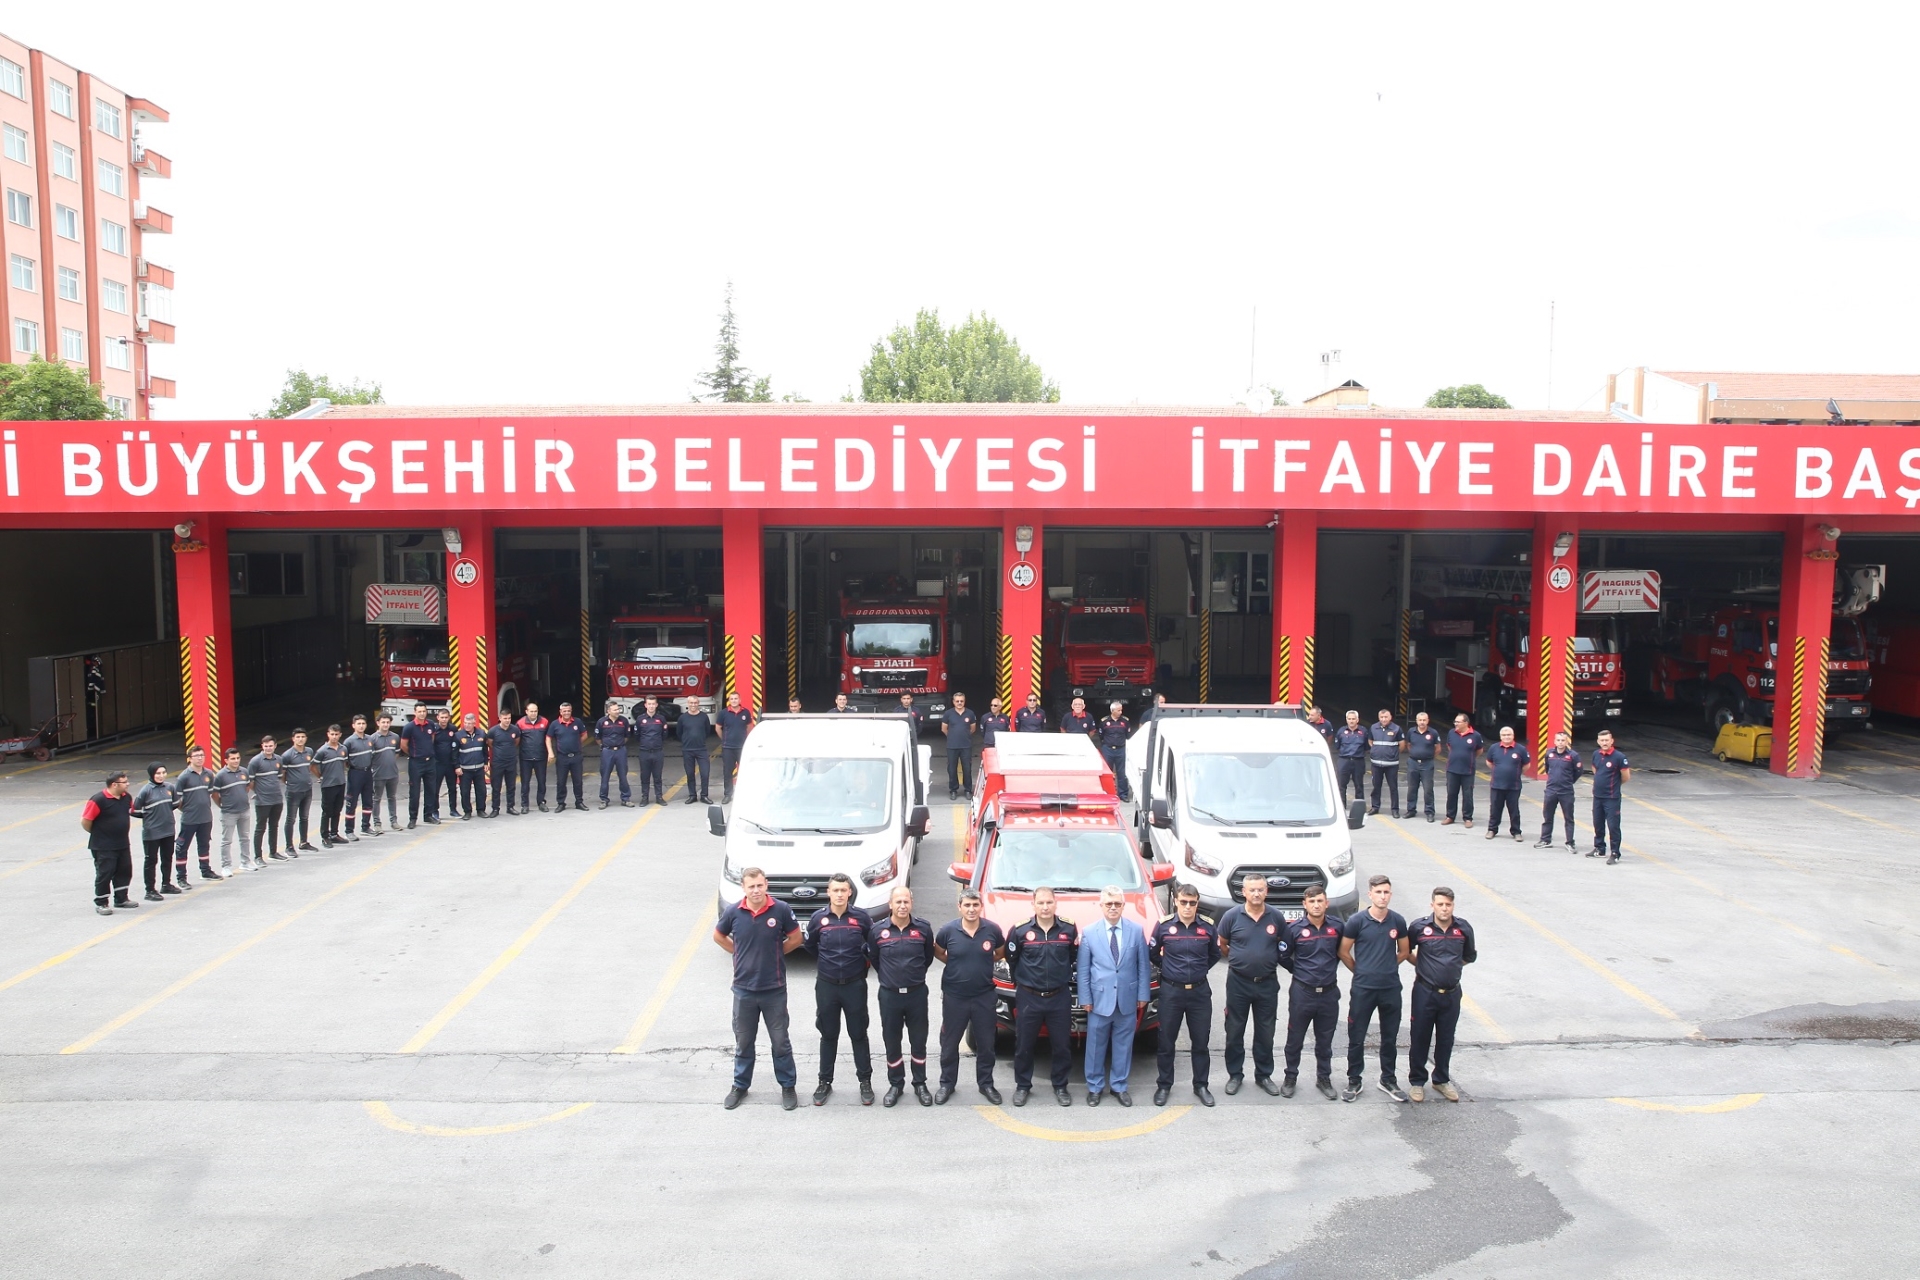 Kayseri Büyükşehir’den Karadeniz'deki Sel Bölgesine Personel ve Ekipman Desteği